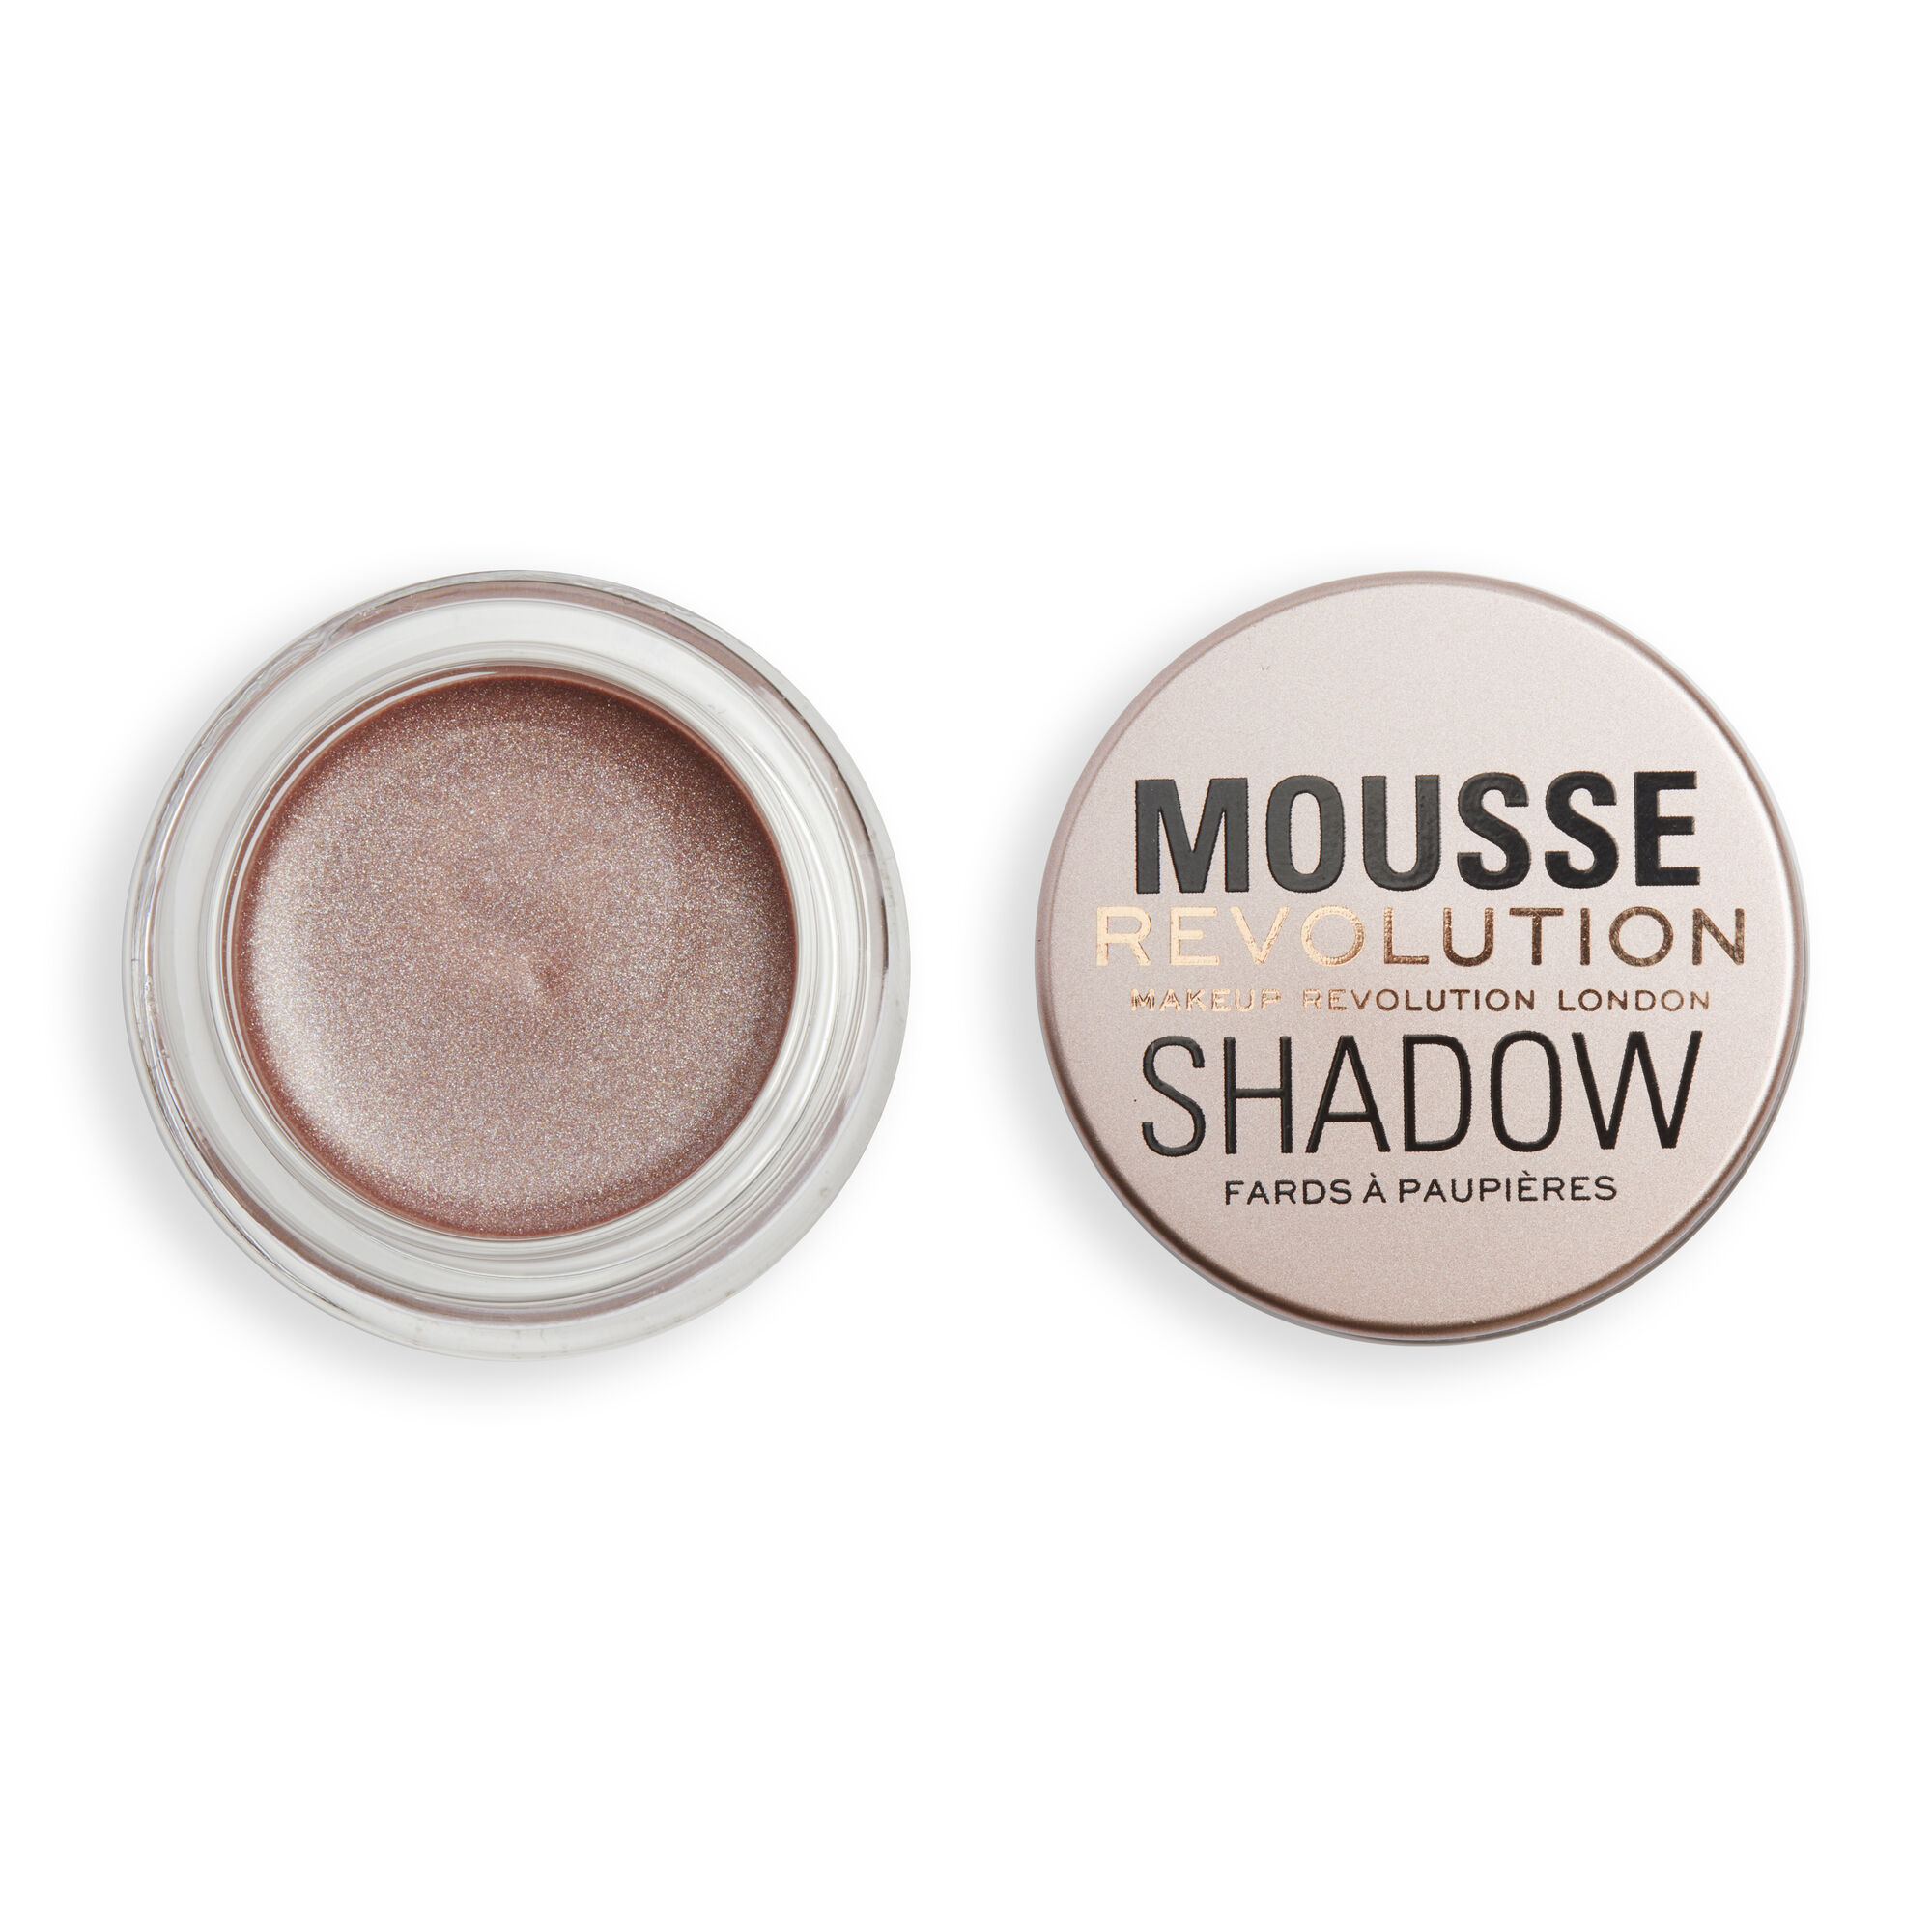 Тени Revolution Makeup кремовые для век Mousse Cream Eyeshadow Rose Gold la rosa тени для век 8 makeup studio